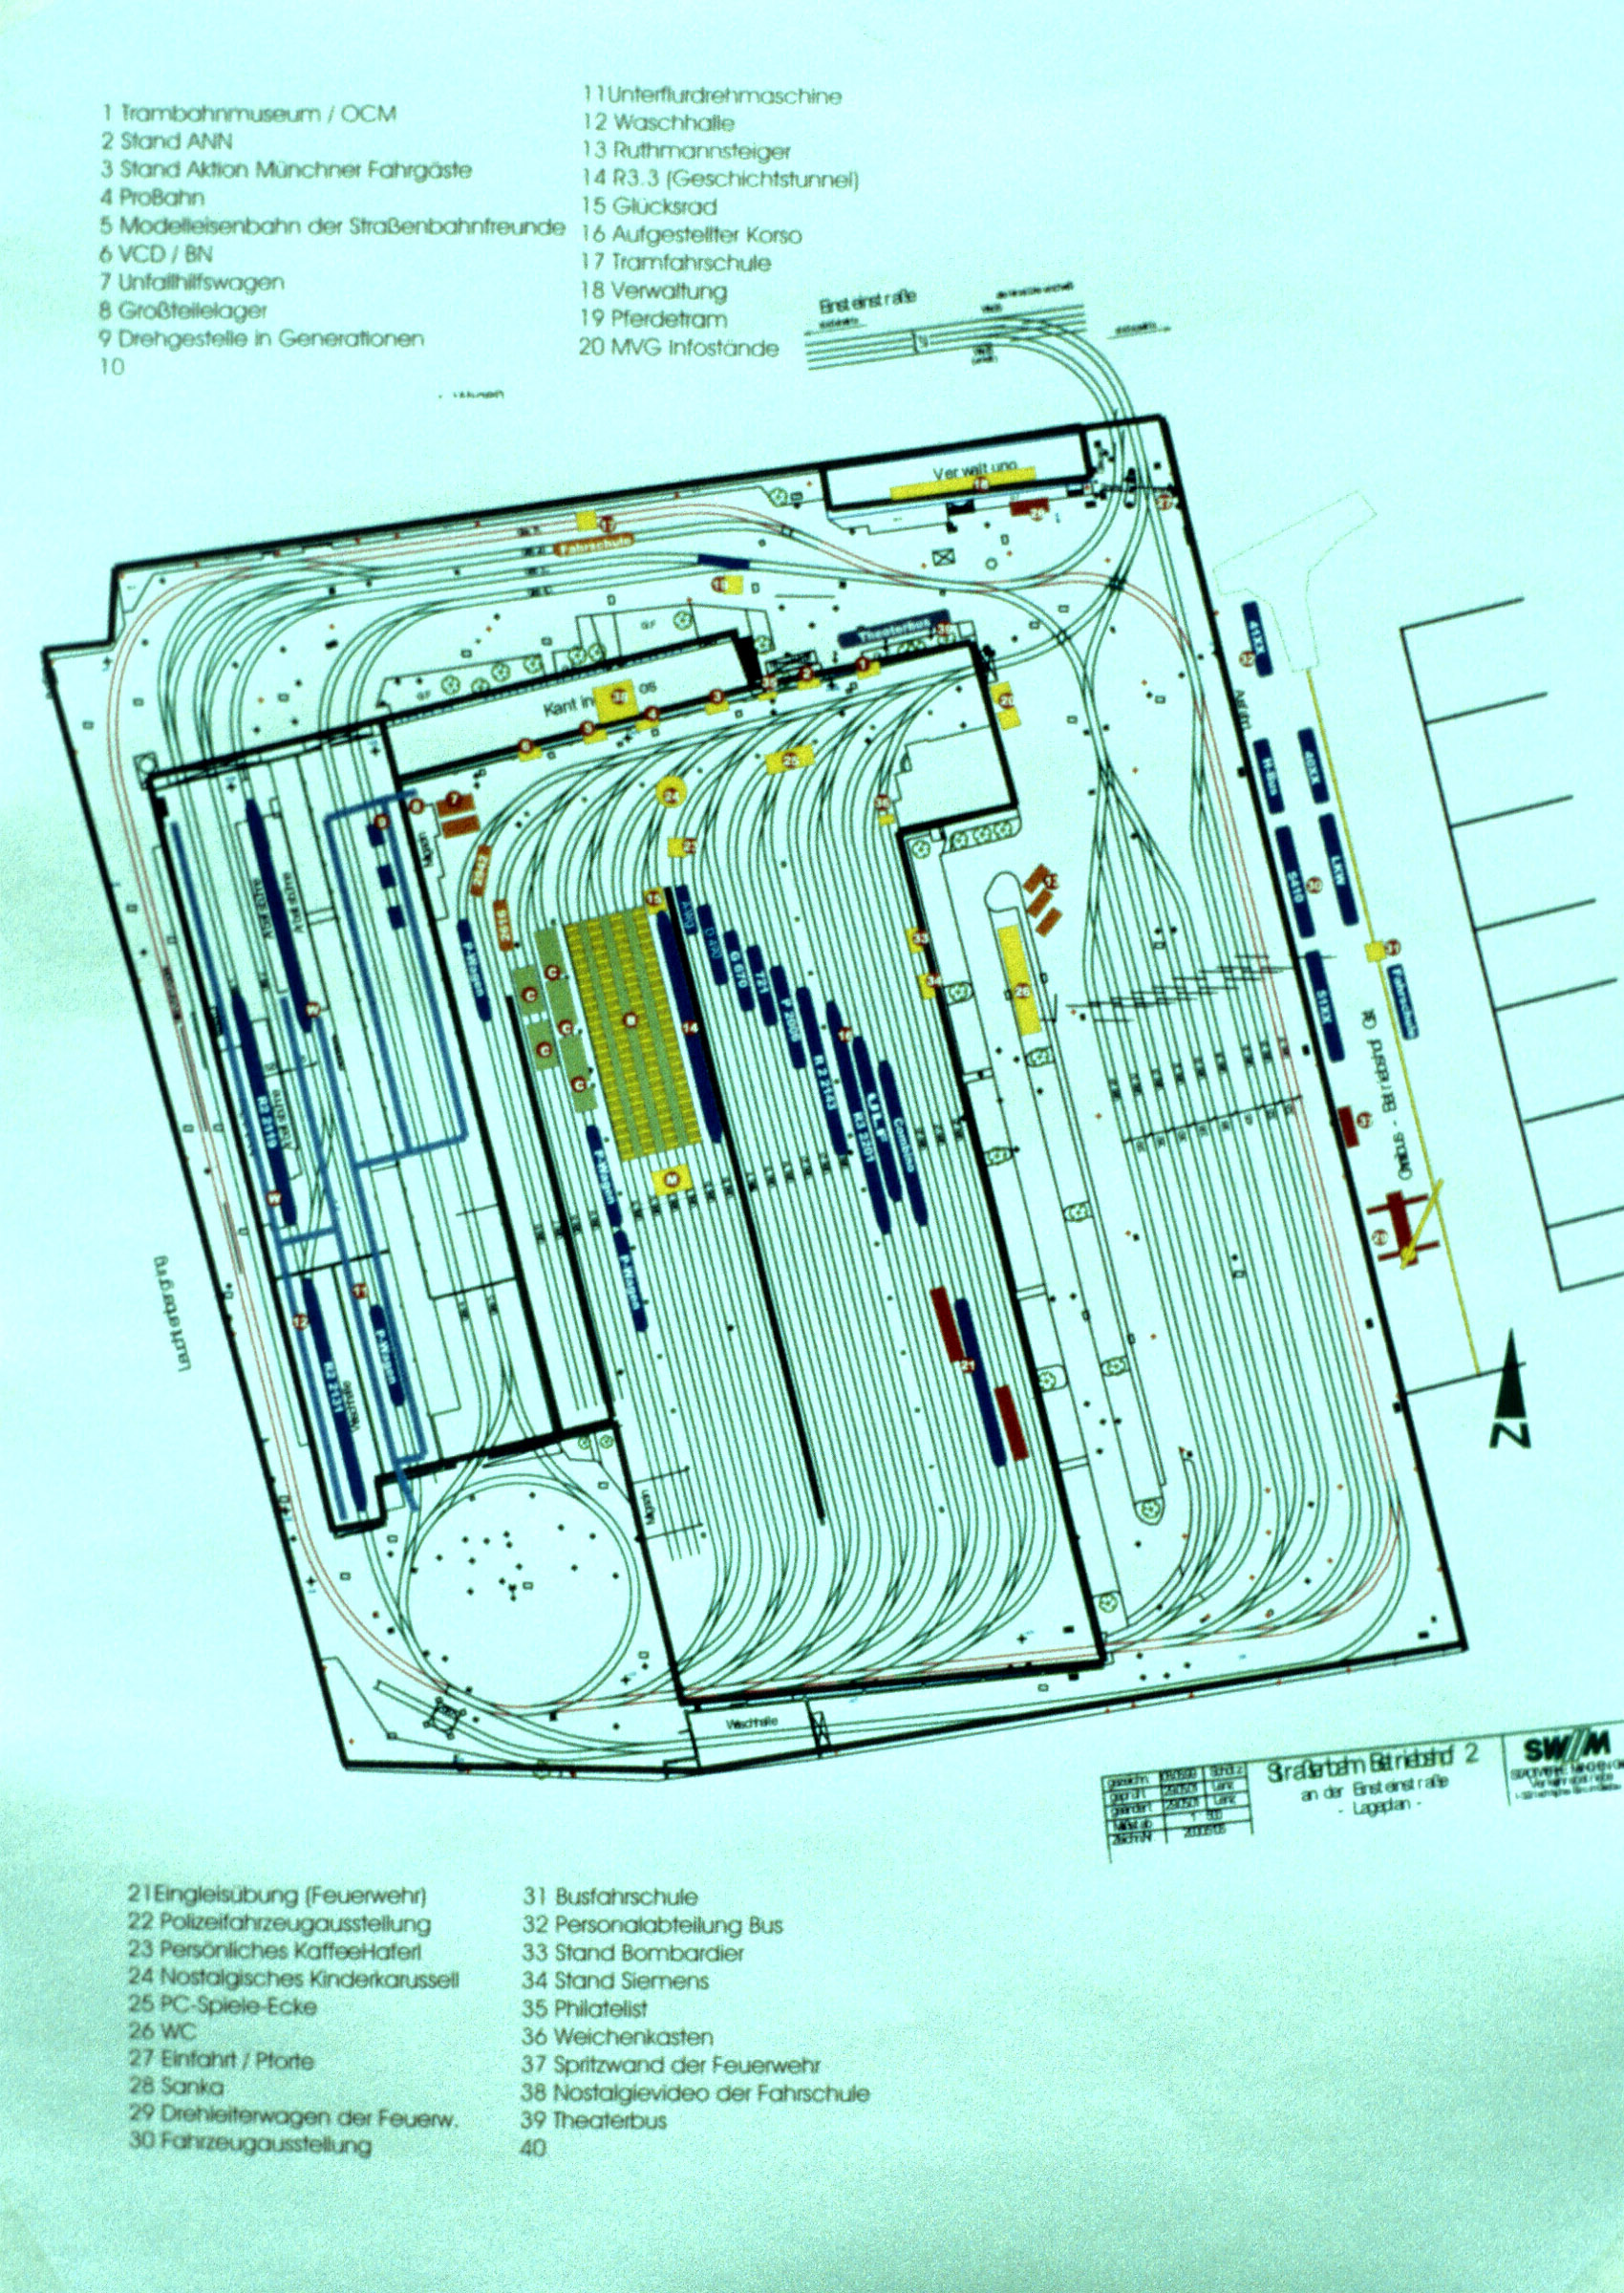 Anhand dieses Plans konnten sich die Besucher einen Überblick über die Attraktionen und den komplizierten Gleisplan des Betriebshofes verschaffen (München, 27.10.2001). 